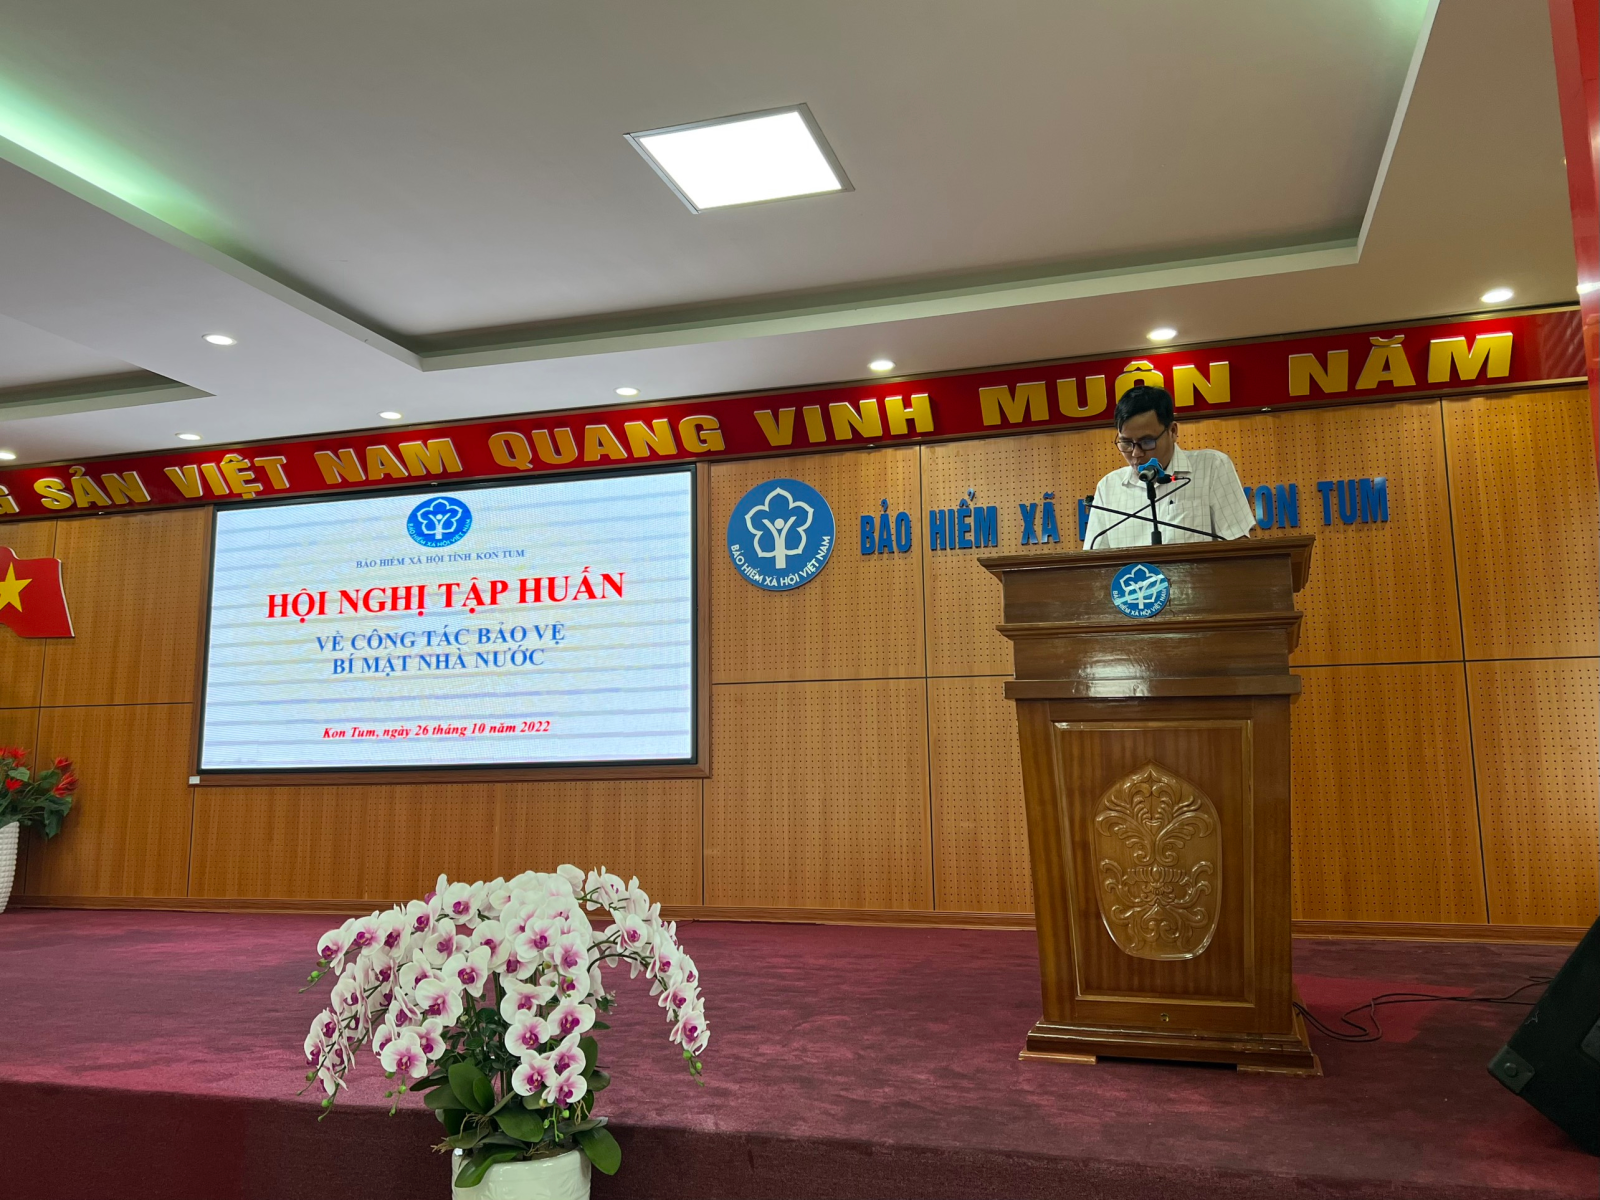 Nguyên tắc bảo vệ bí mật nhà nước ngành Bảo hiểm xã hội Việt Nam